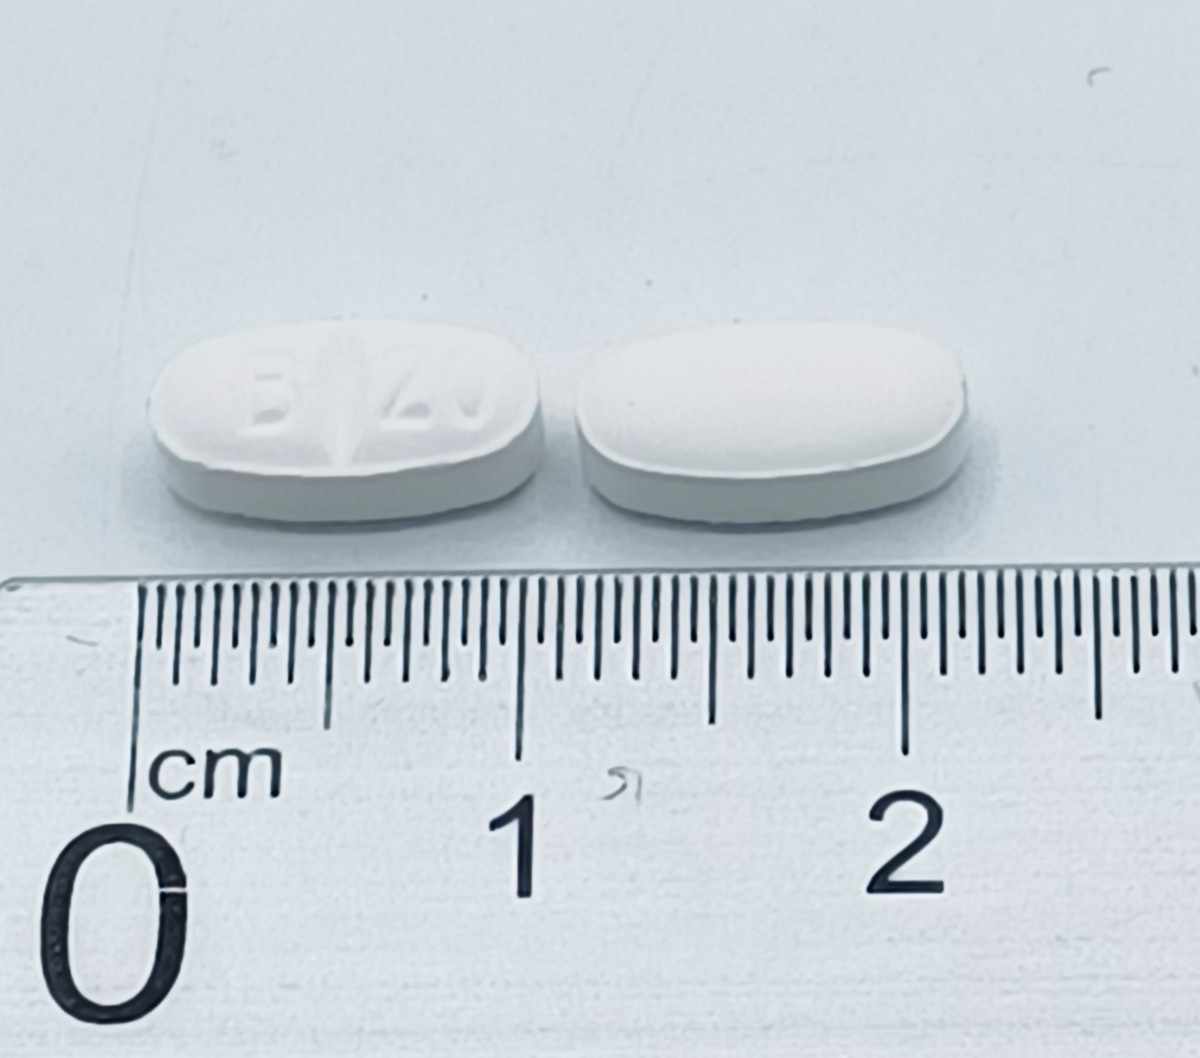 ABRILIA 20 MG COMPRIMIDOS EFG, 20 comprimidos (Bluister Al/Al/PA-PVC) fotografía de la forma farmacéutica.